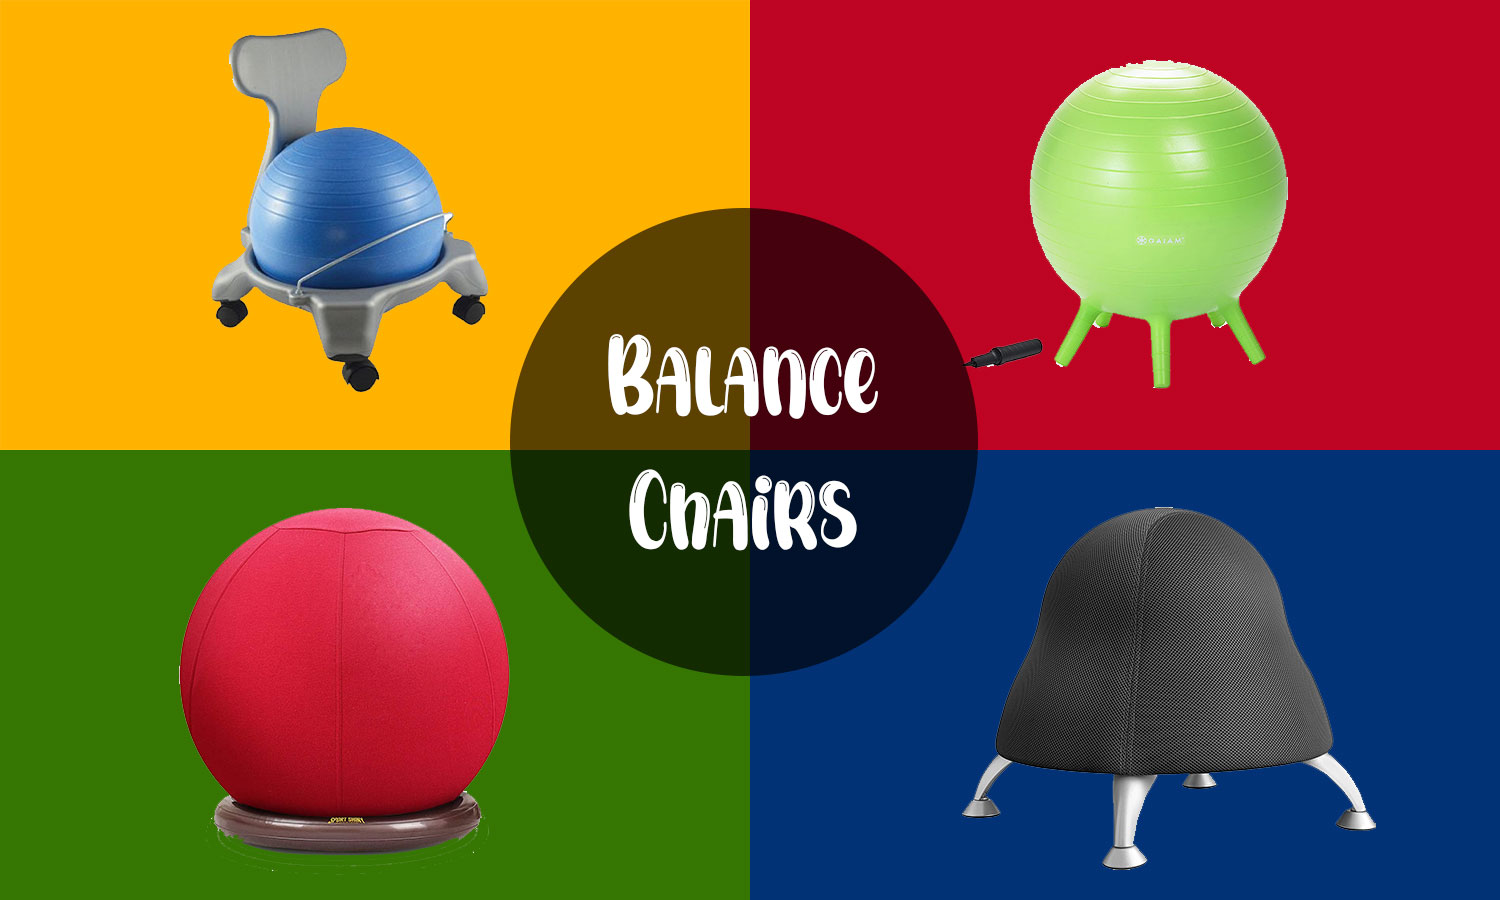 Balance Chairs 1 